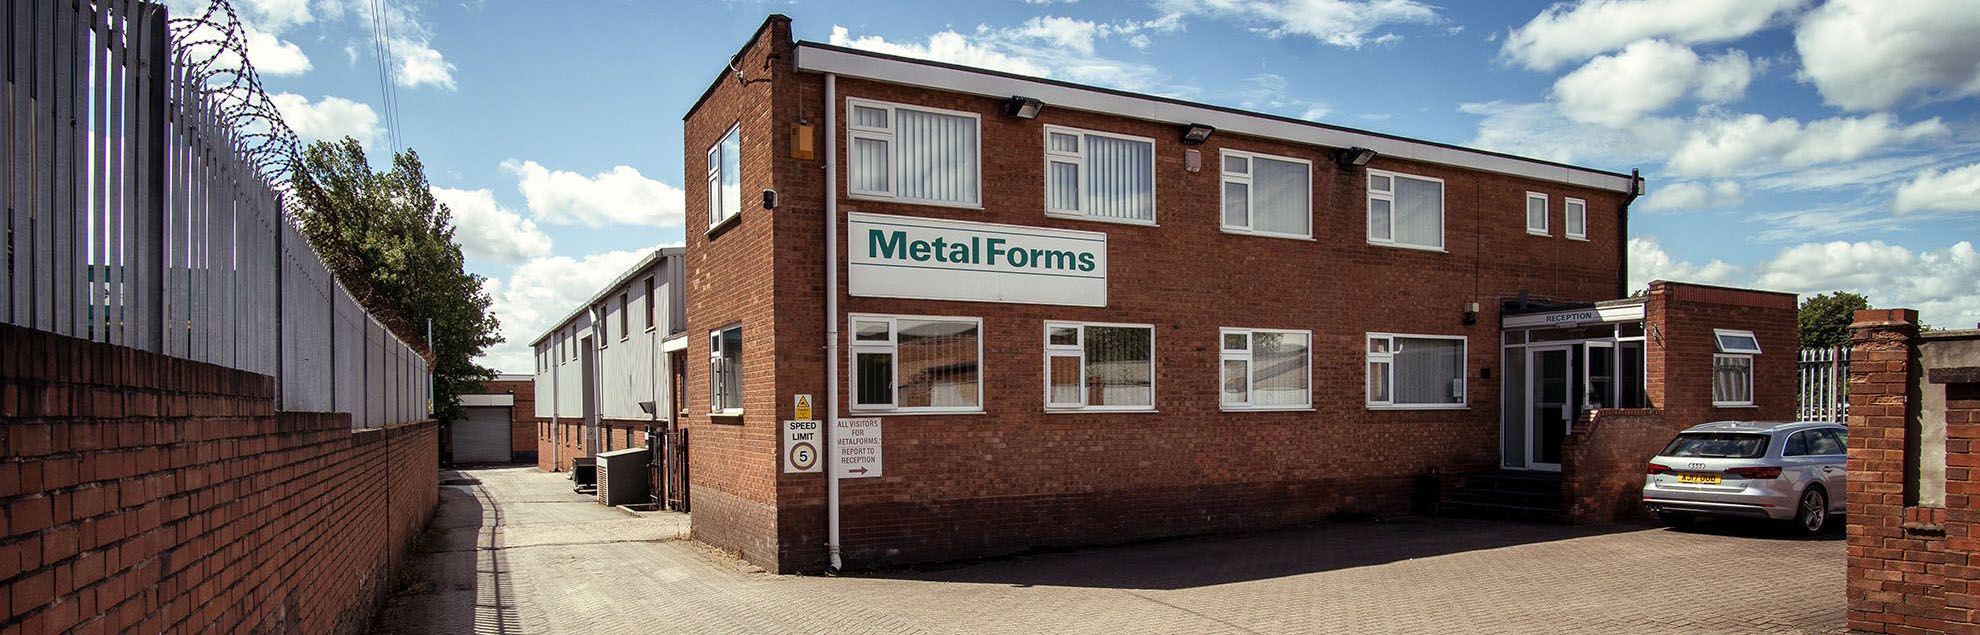 Metal Forms Engineering Ltd